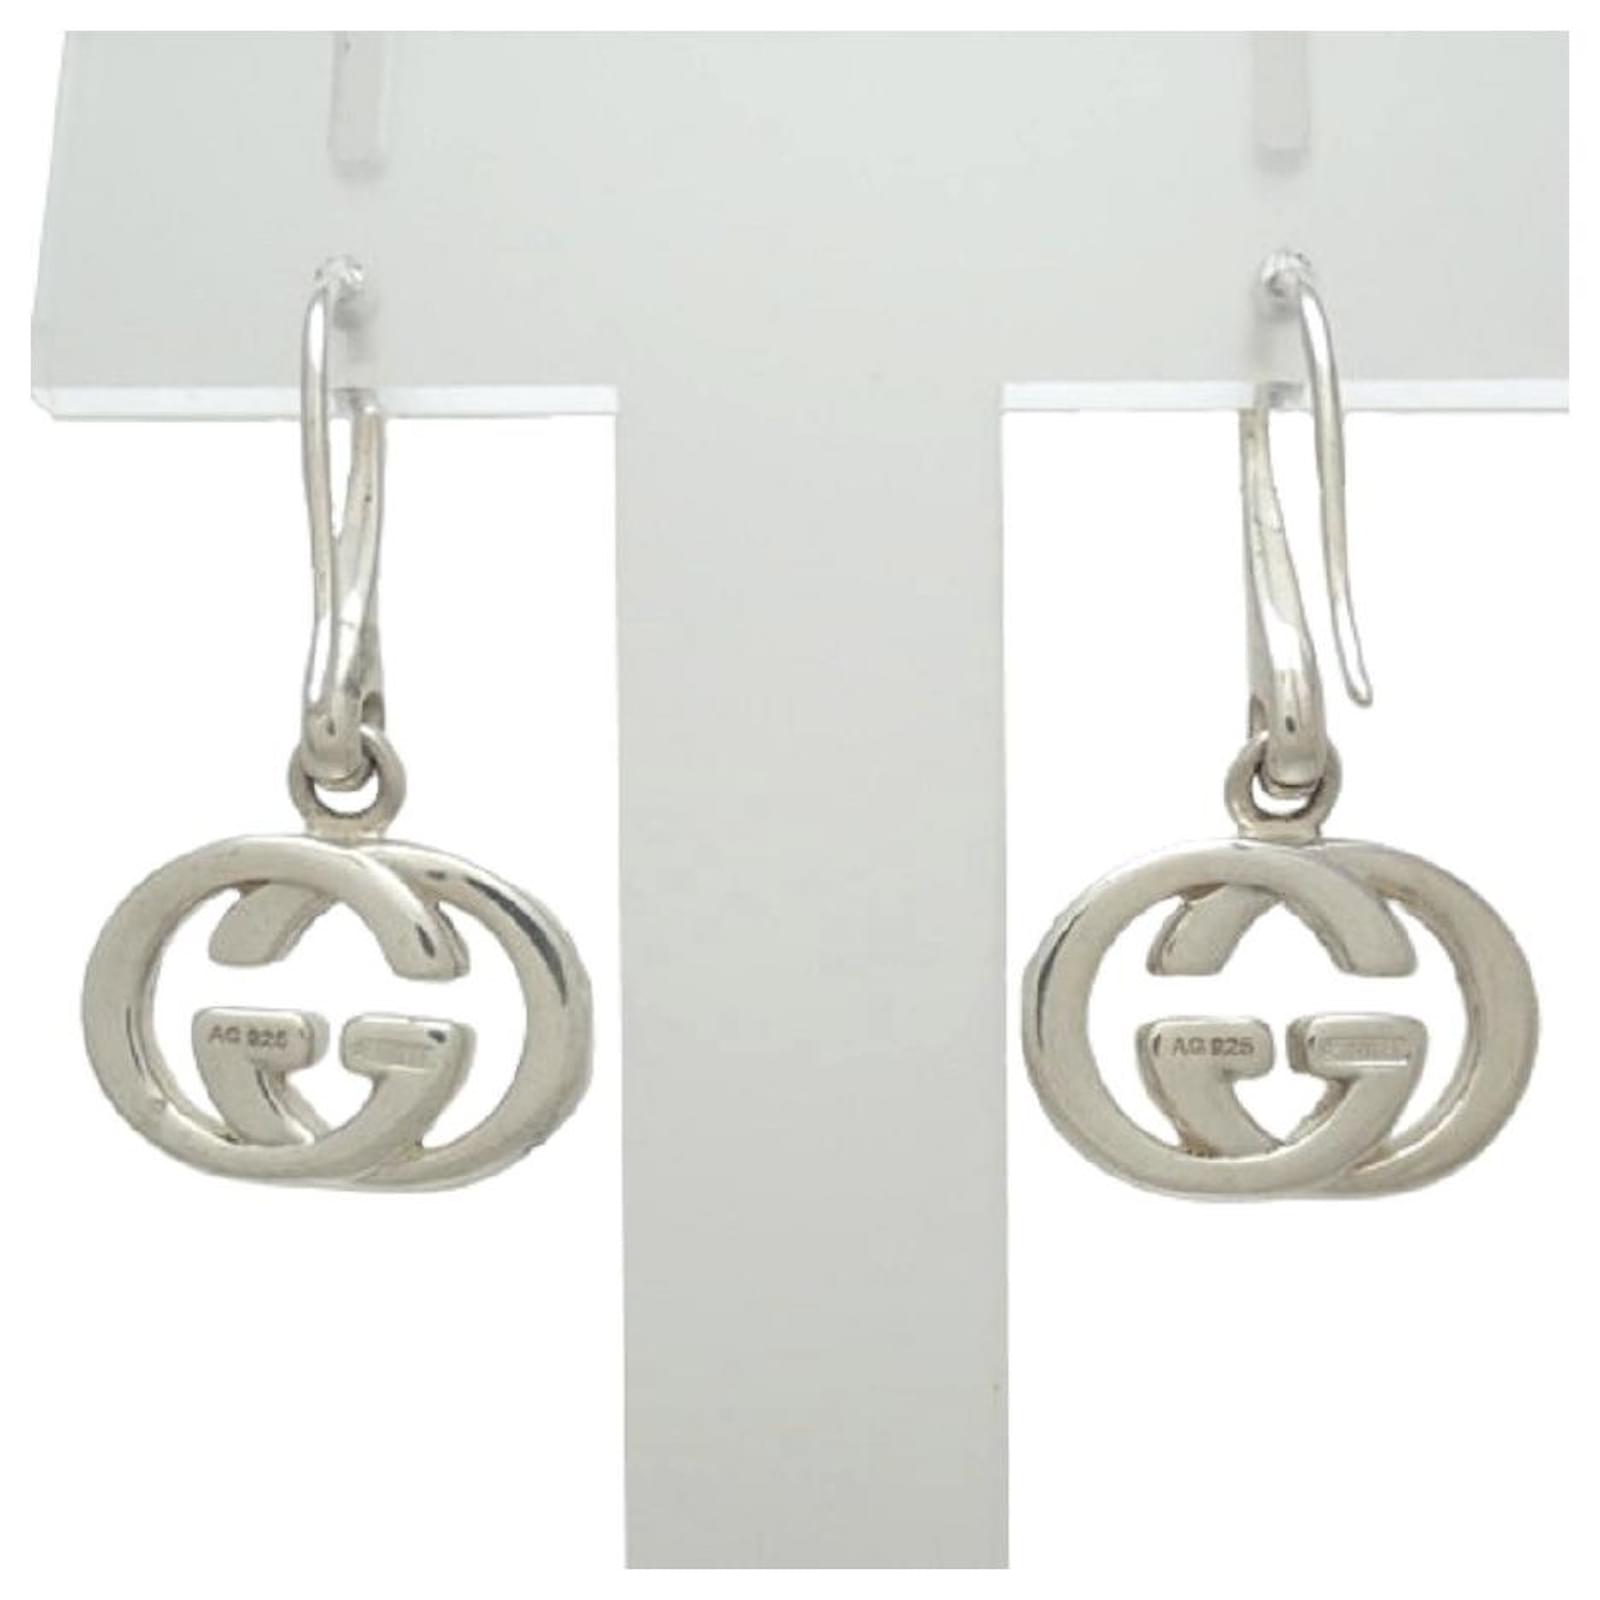 GUCCI earrings Silver Interlocking GG Logo Men Women Silver 925 W/Box  unused 